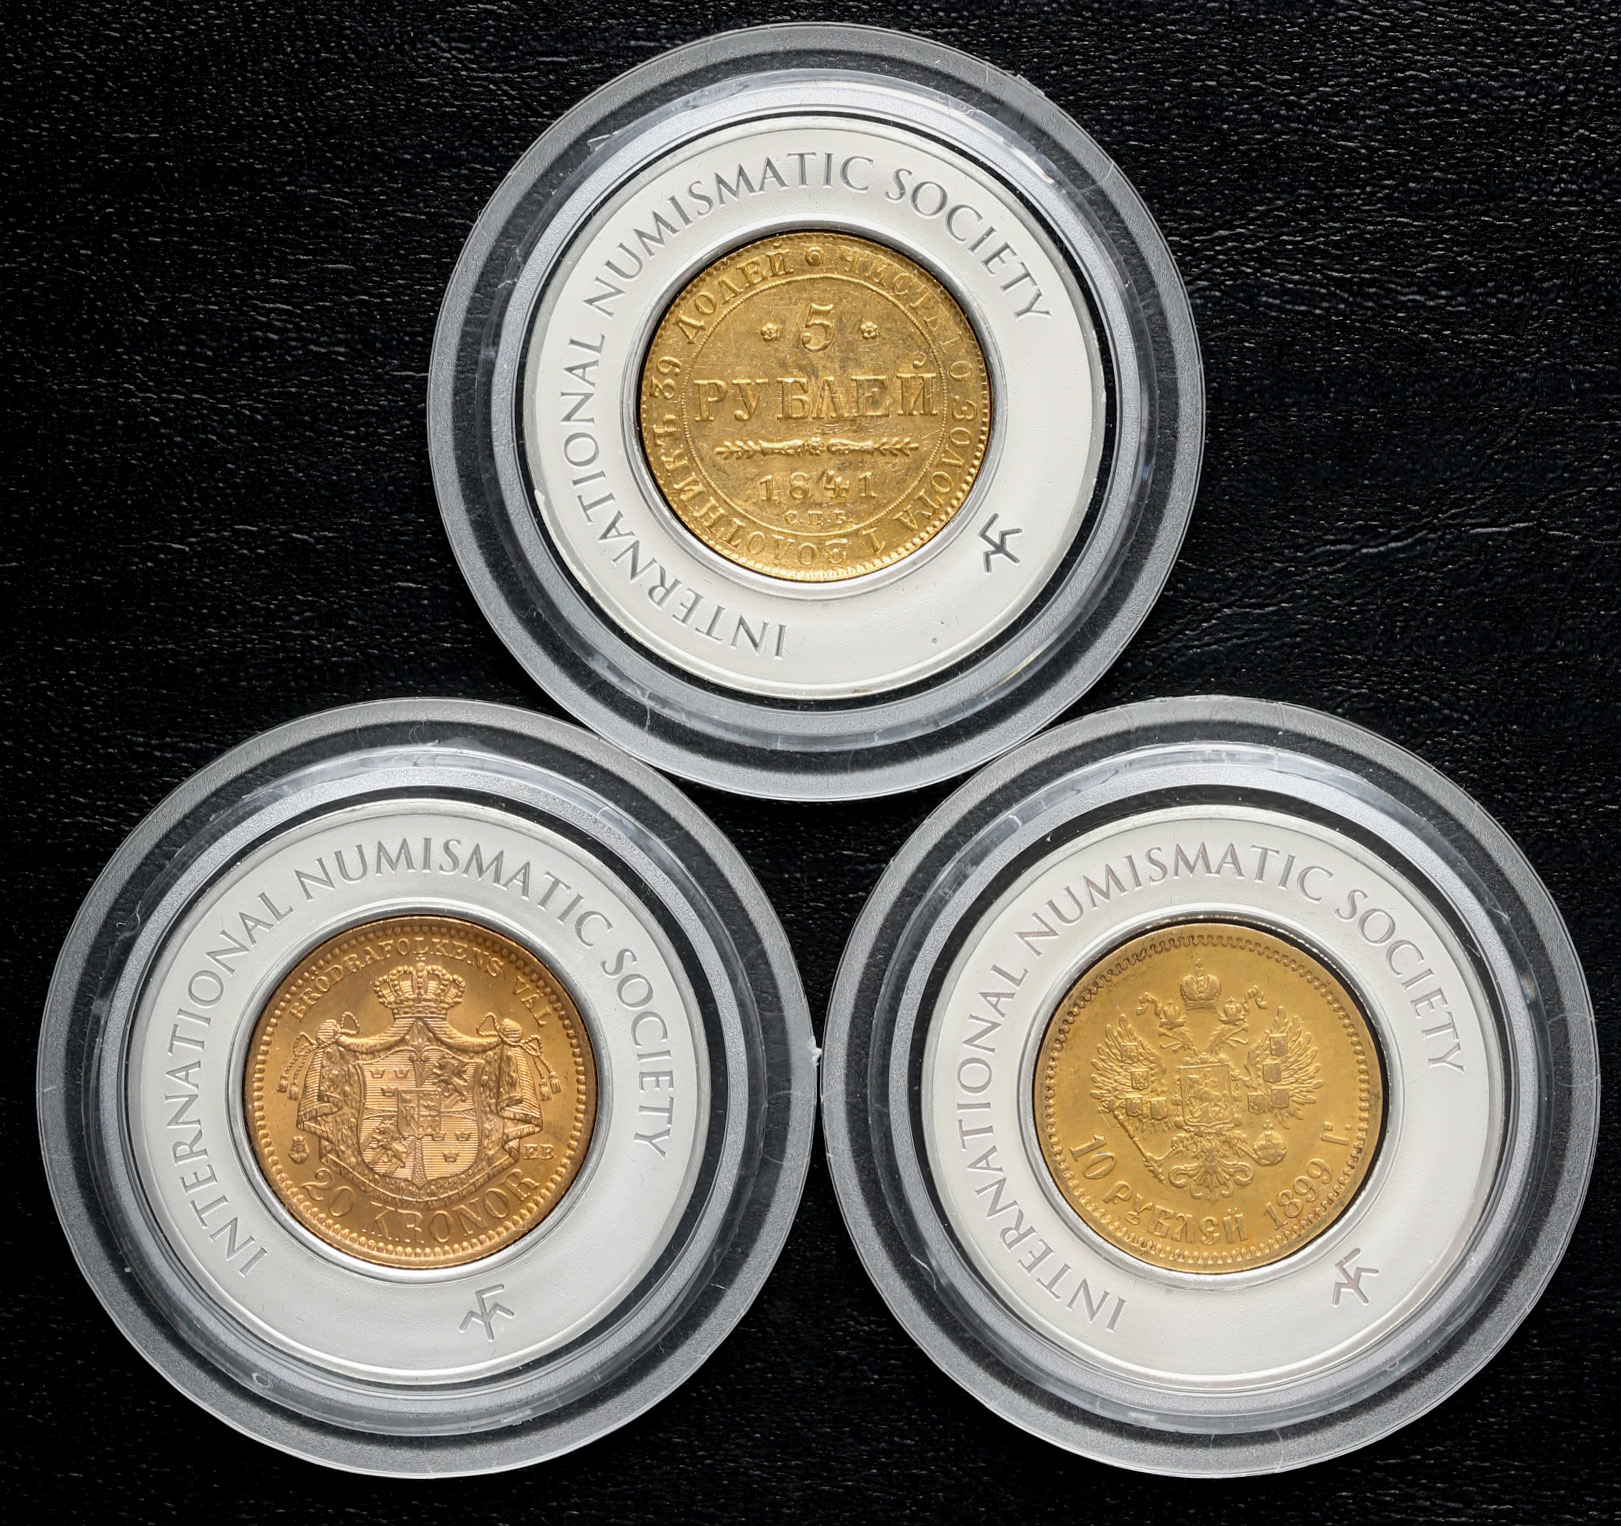 オークション,Lot of world coins 世界のコイン “GOLD Coin of The